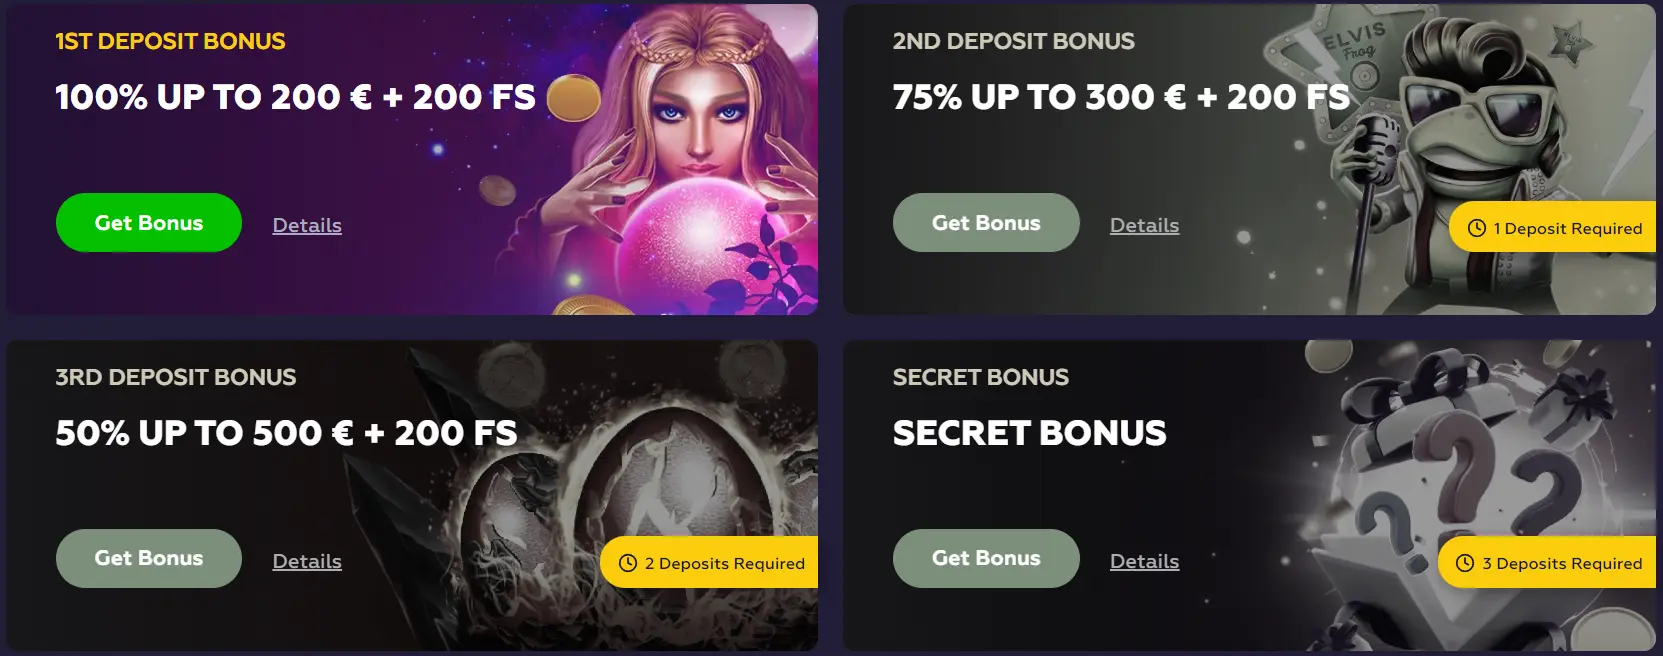 Playfina casino bonuses example